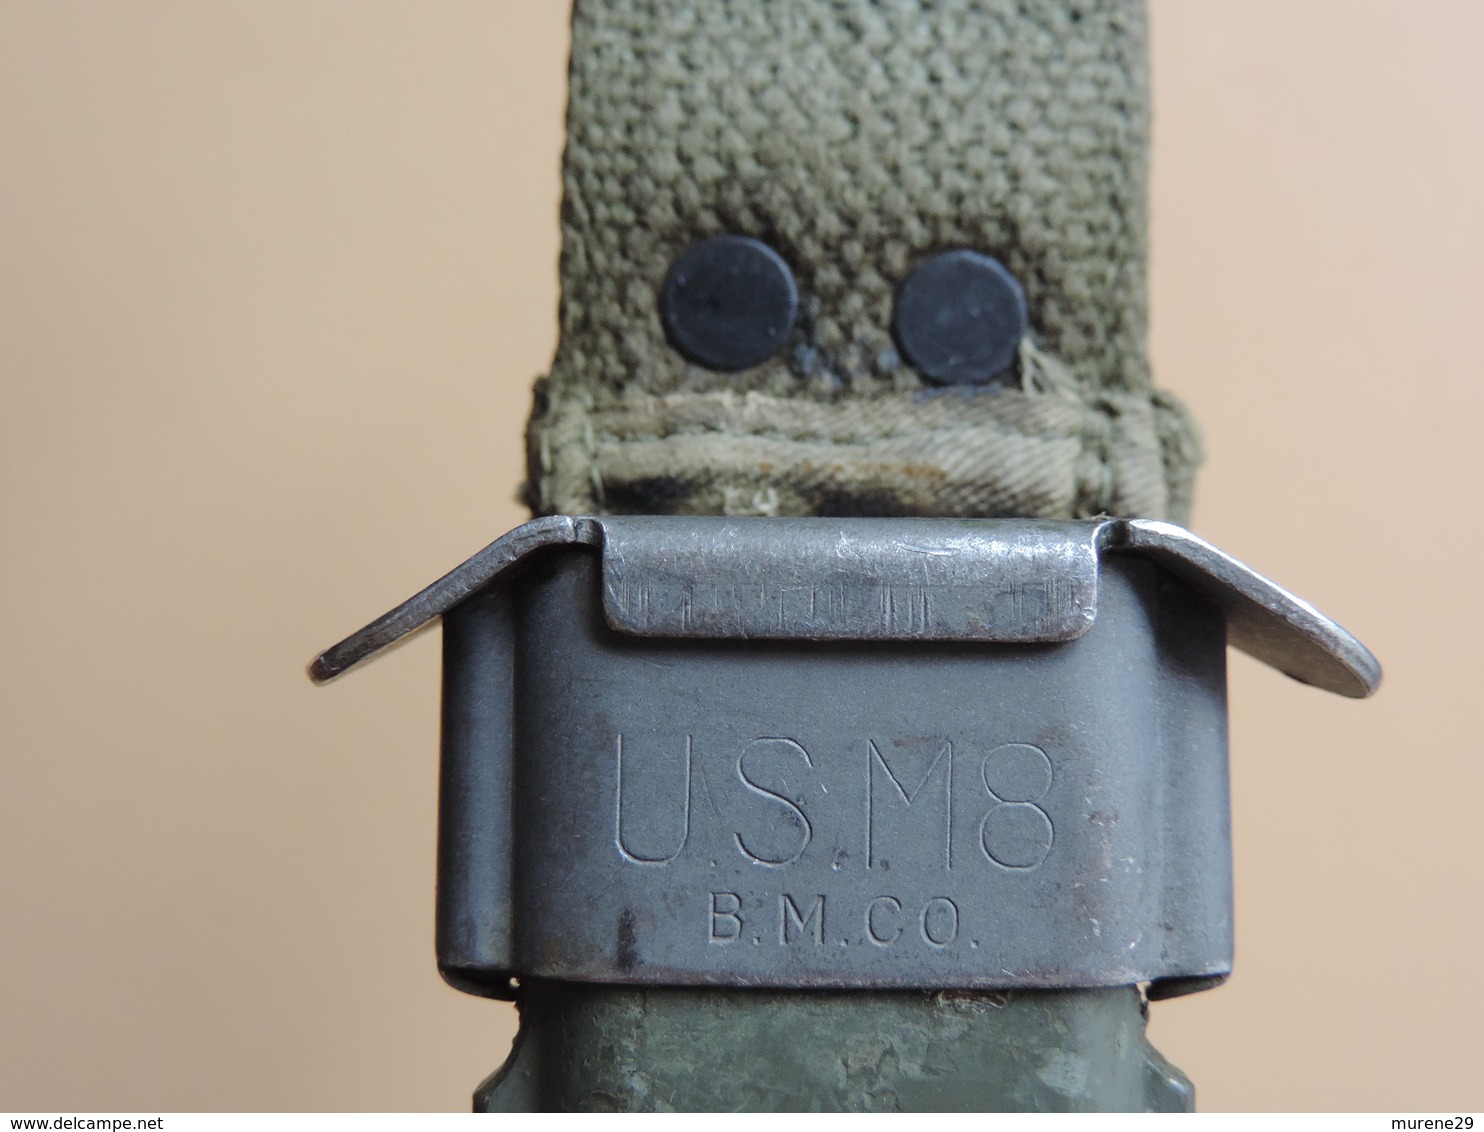 Baïonnette USM4 CASE à poignée caoutchouc, US WW2 et Corée.